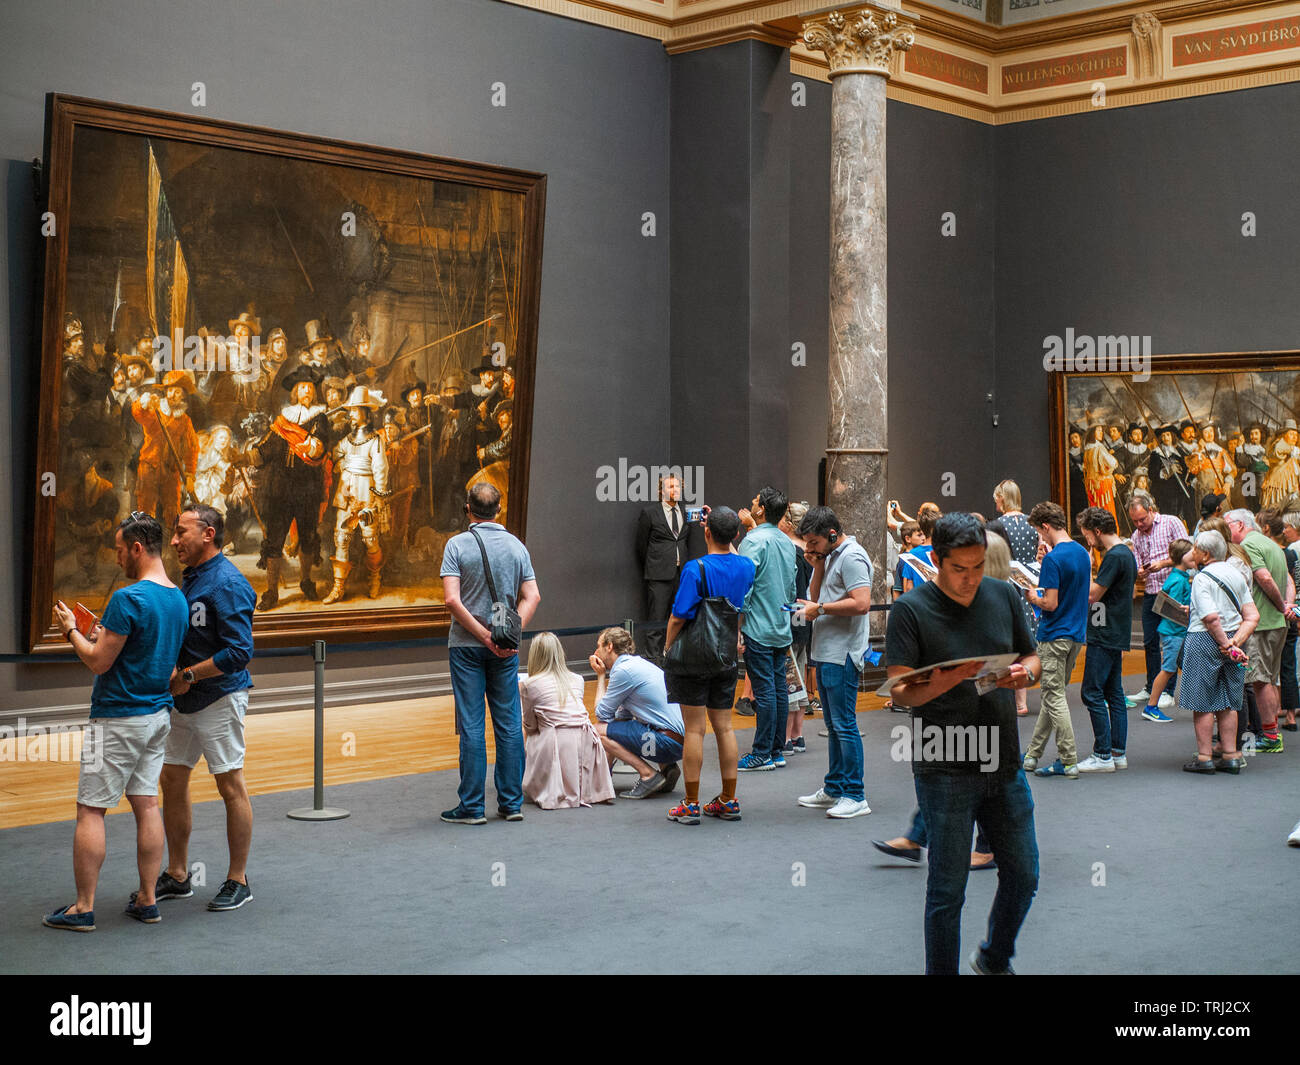 Turista mirando los The Night Watch, una pintura de Rembrandt Harmenszoon van Rijn, en el Rijksmuseum de Amsterdam, Países Bajos. Rembrandt es consi Foto de stock